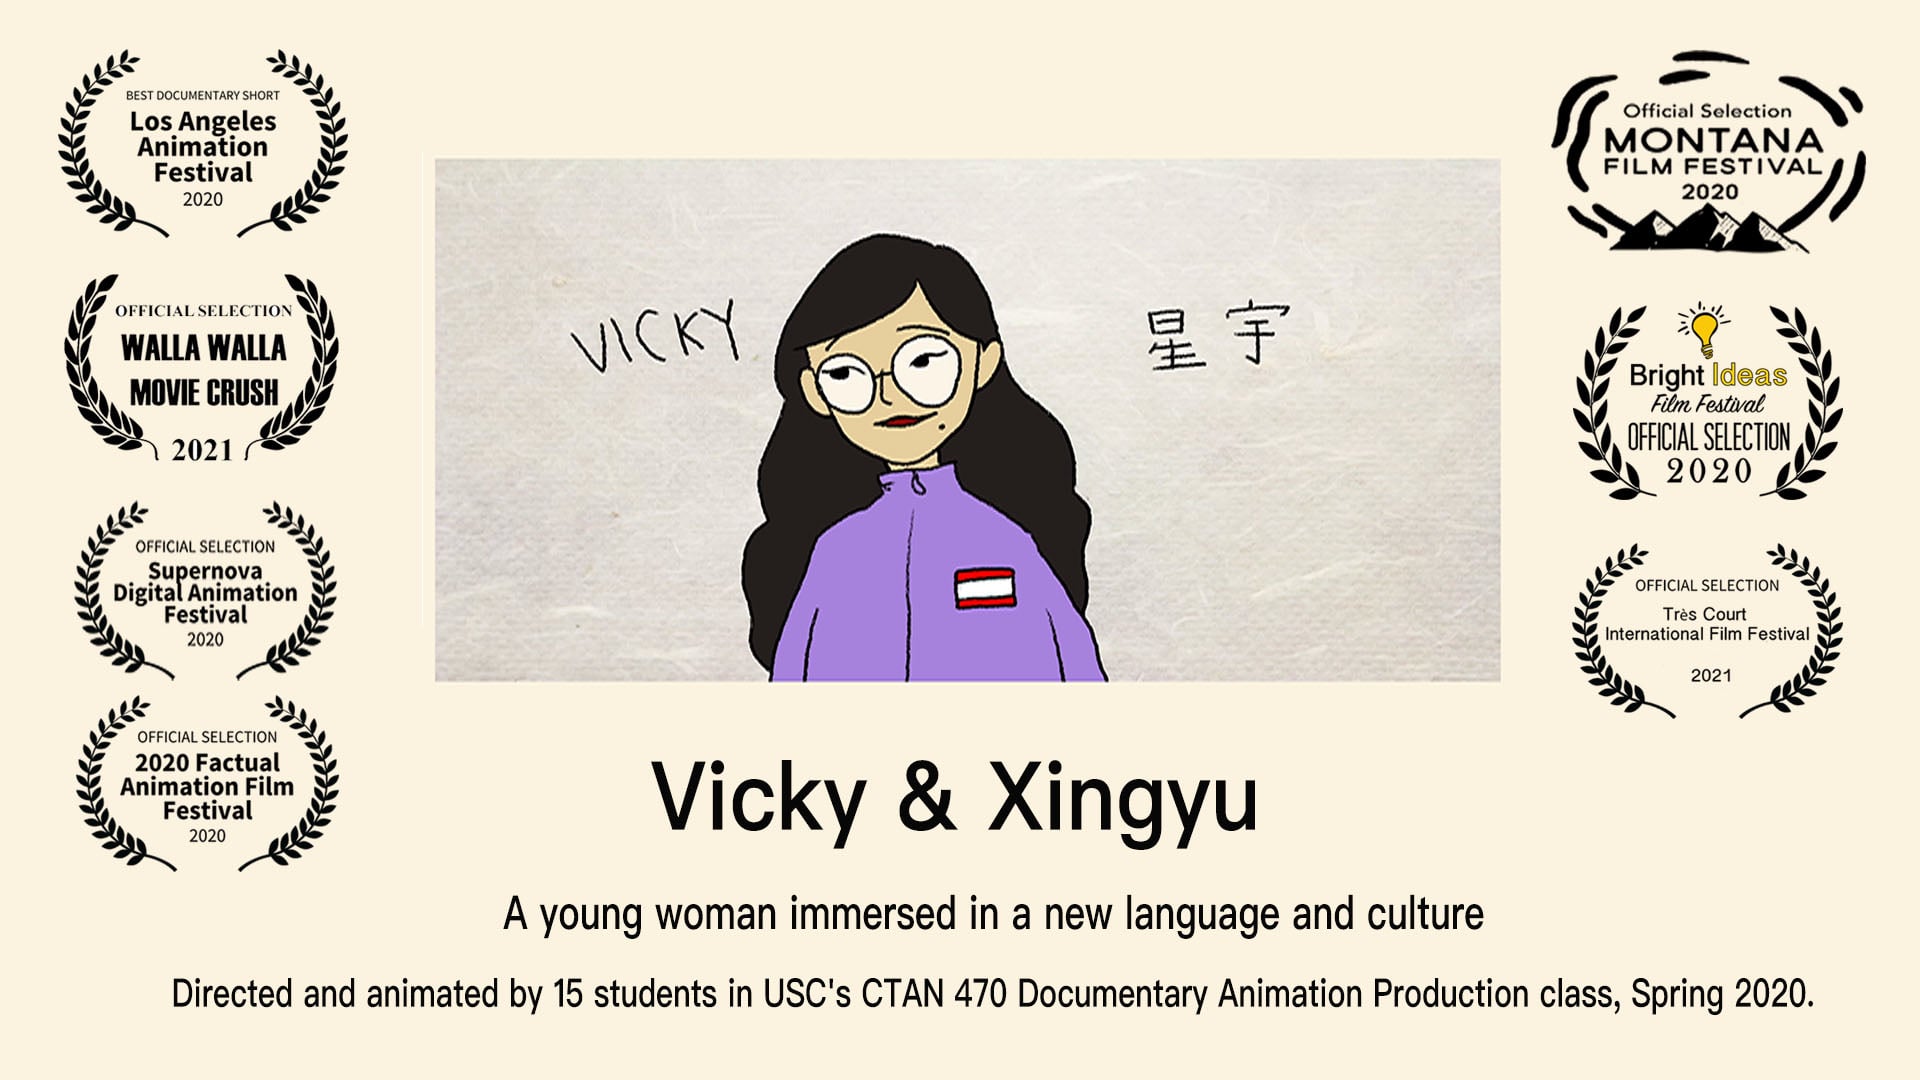 Vicky & Xingyu (2020)